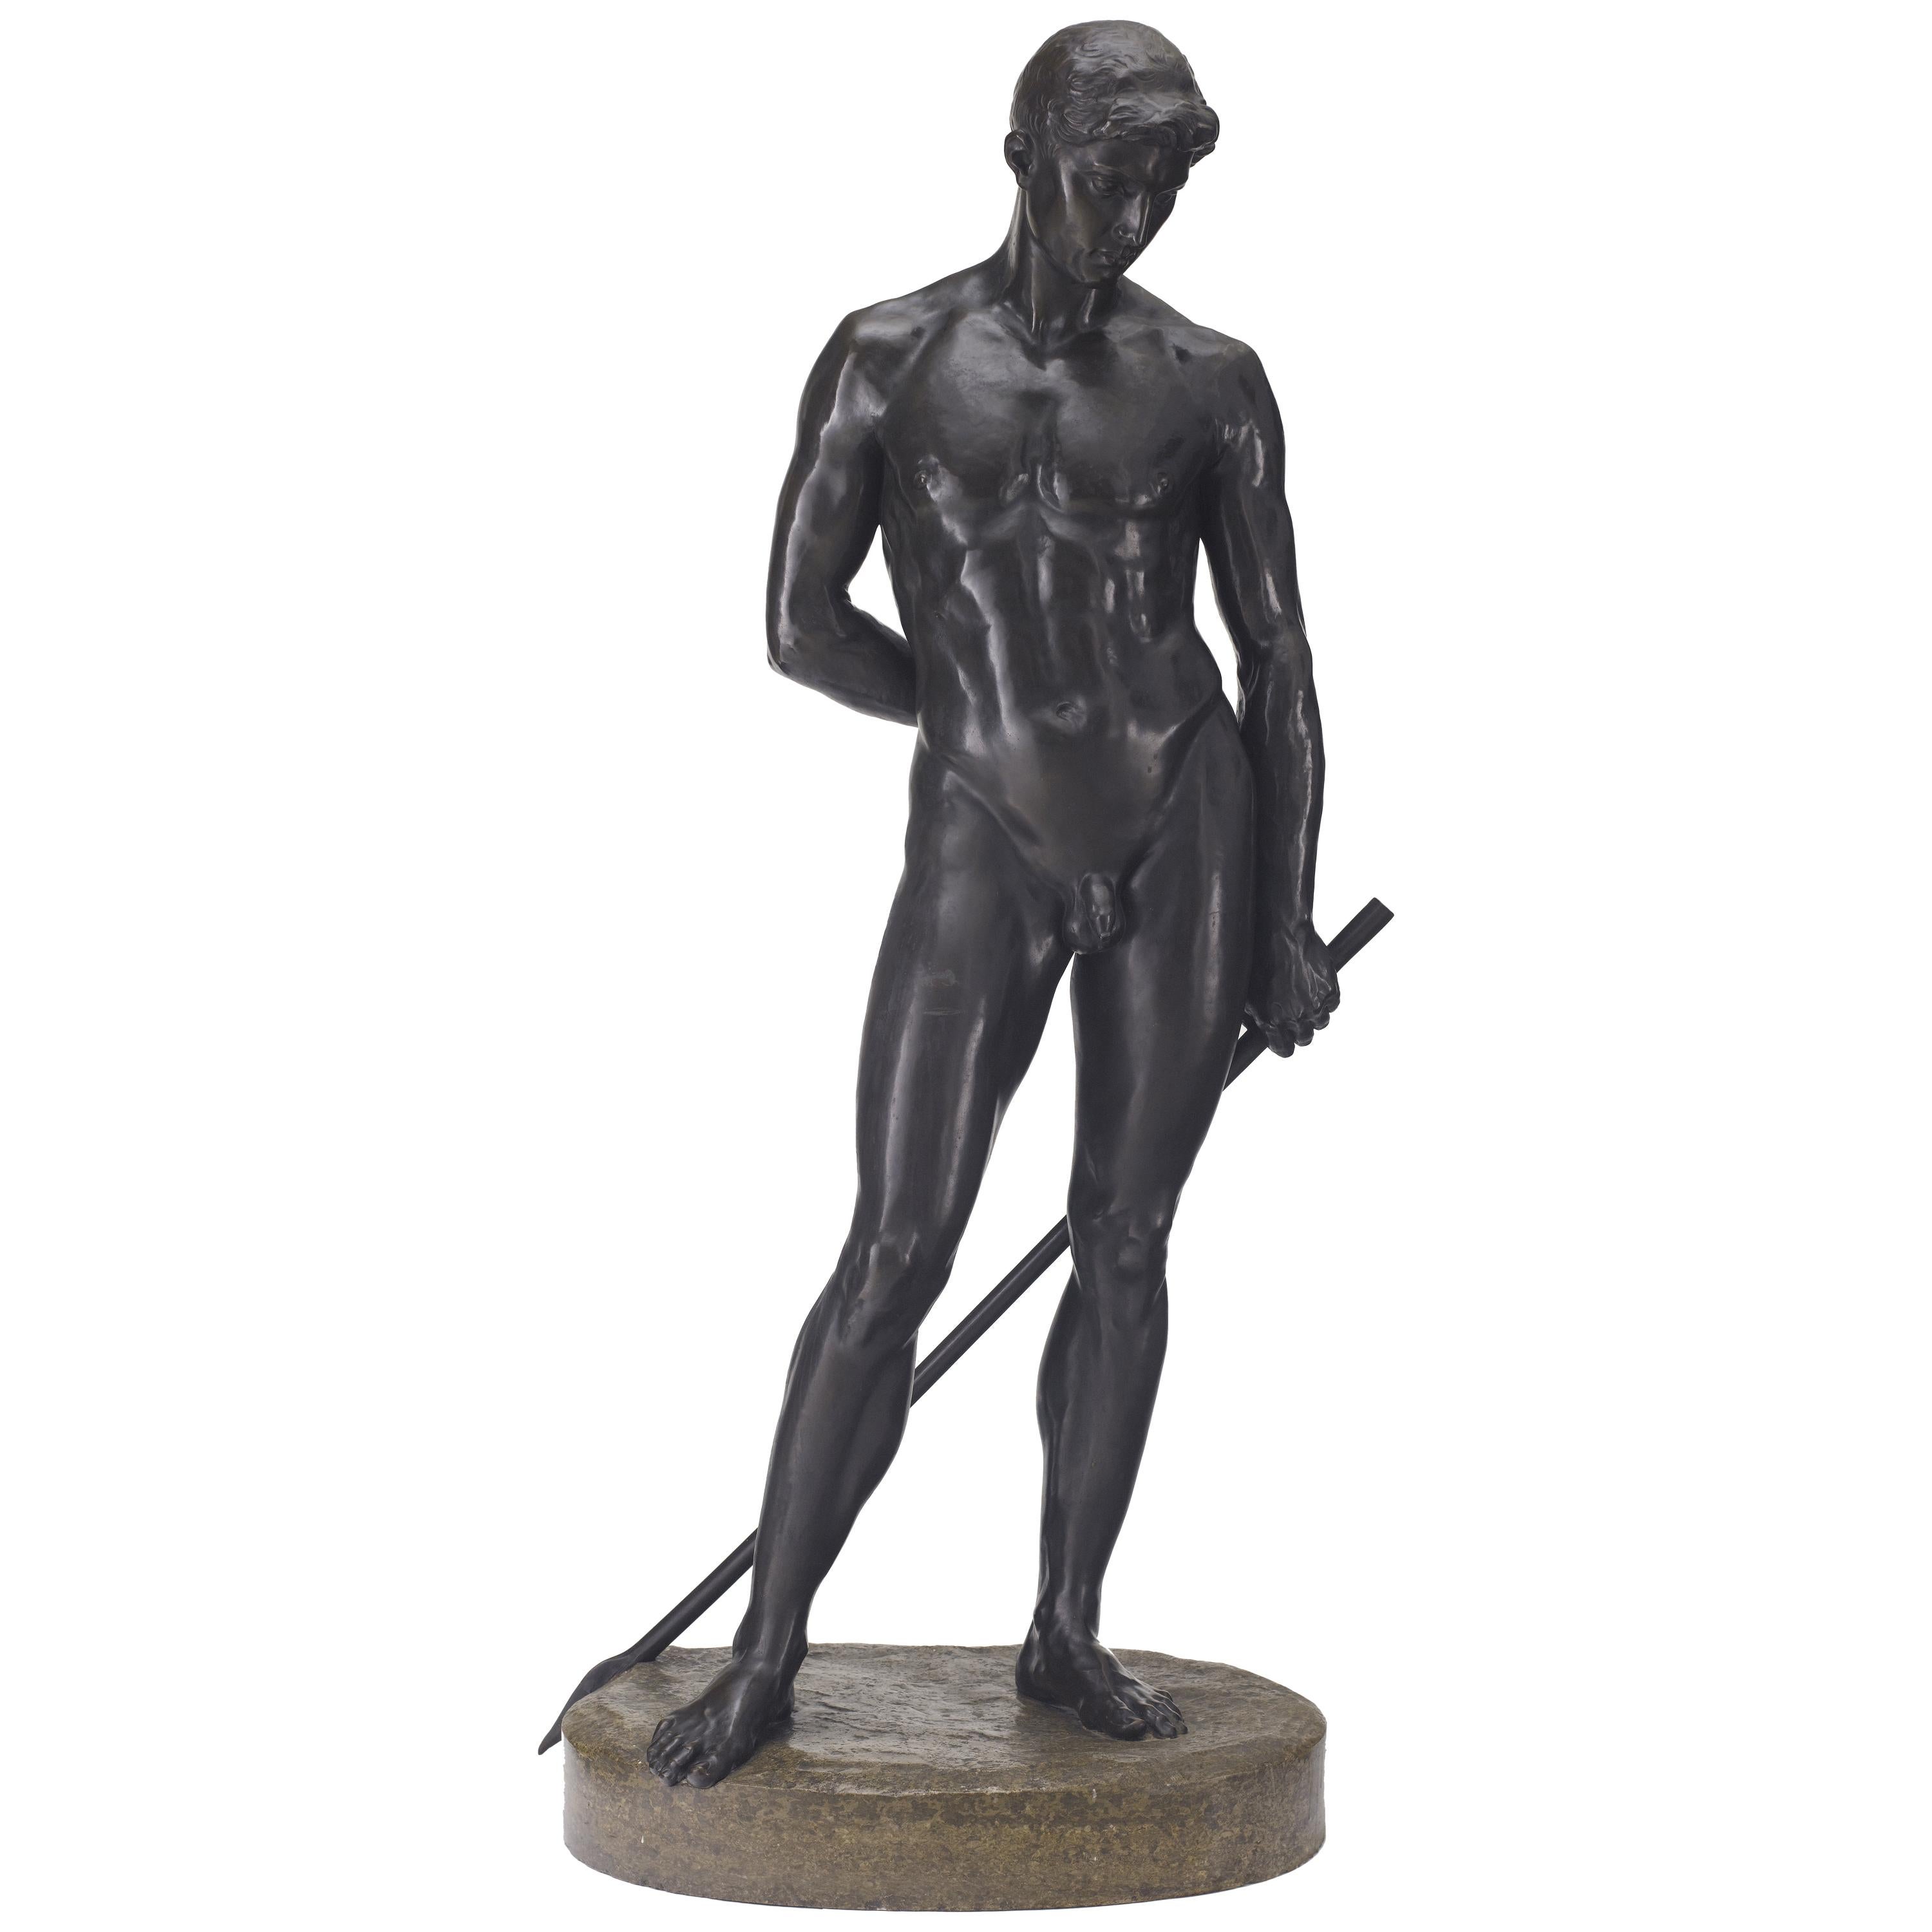 German Life-Size Bronze Statue of Adonis by Richard Koenig, Dresden